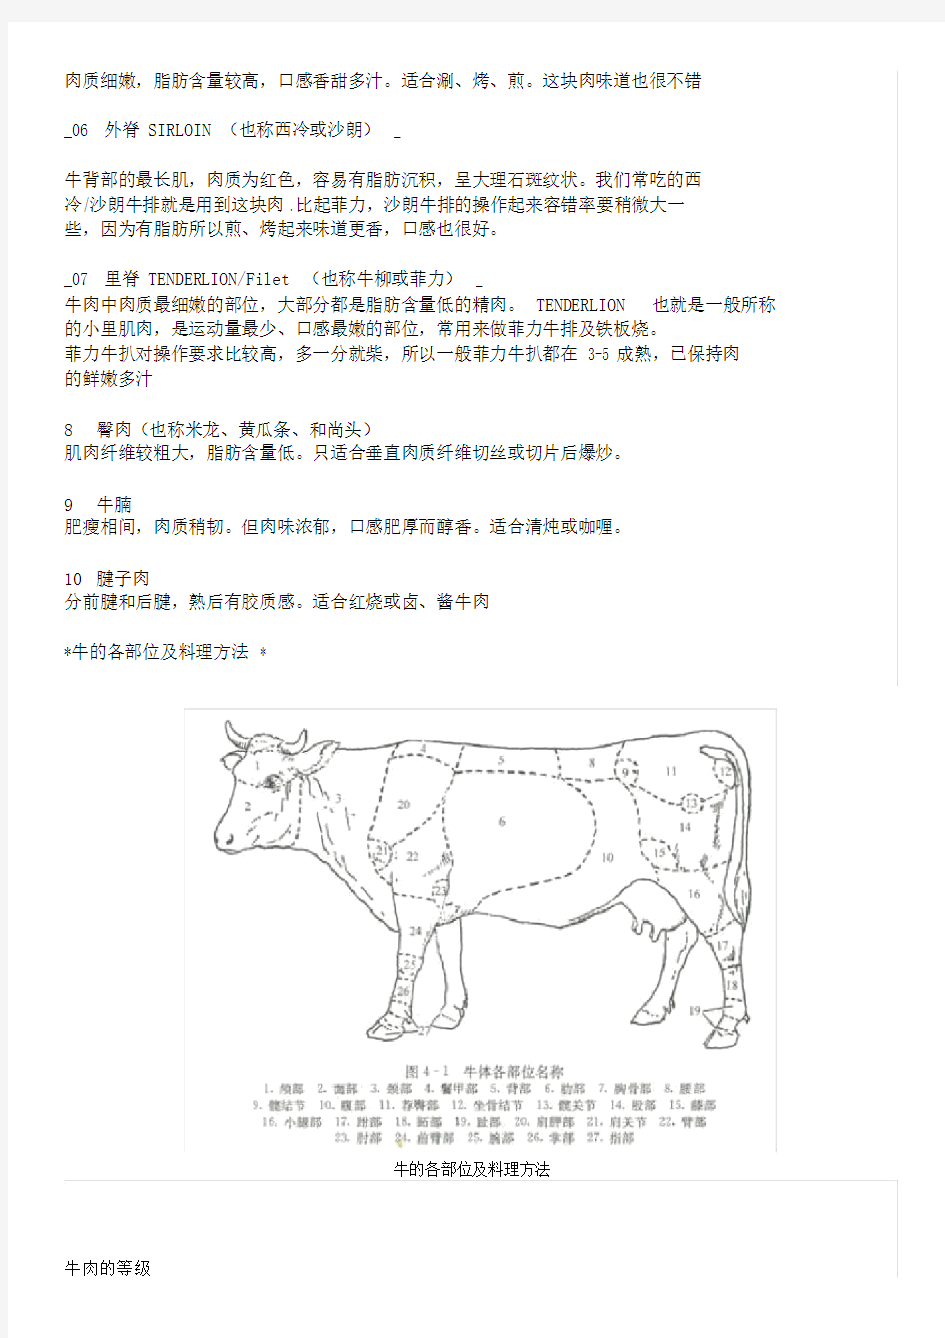 牛肉的部位图解与做法+牛肉各个部位分布图及质地简介